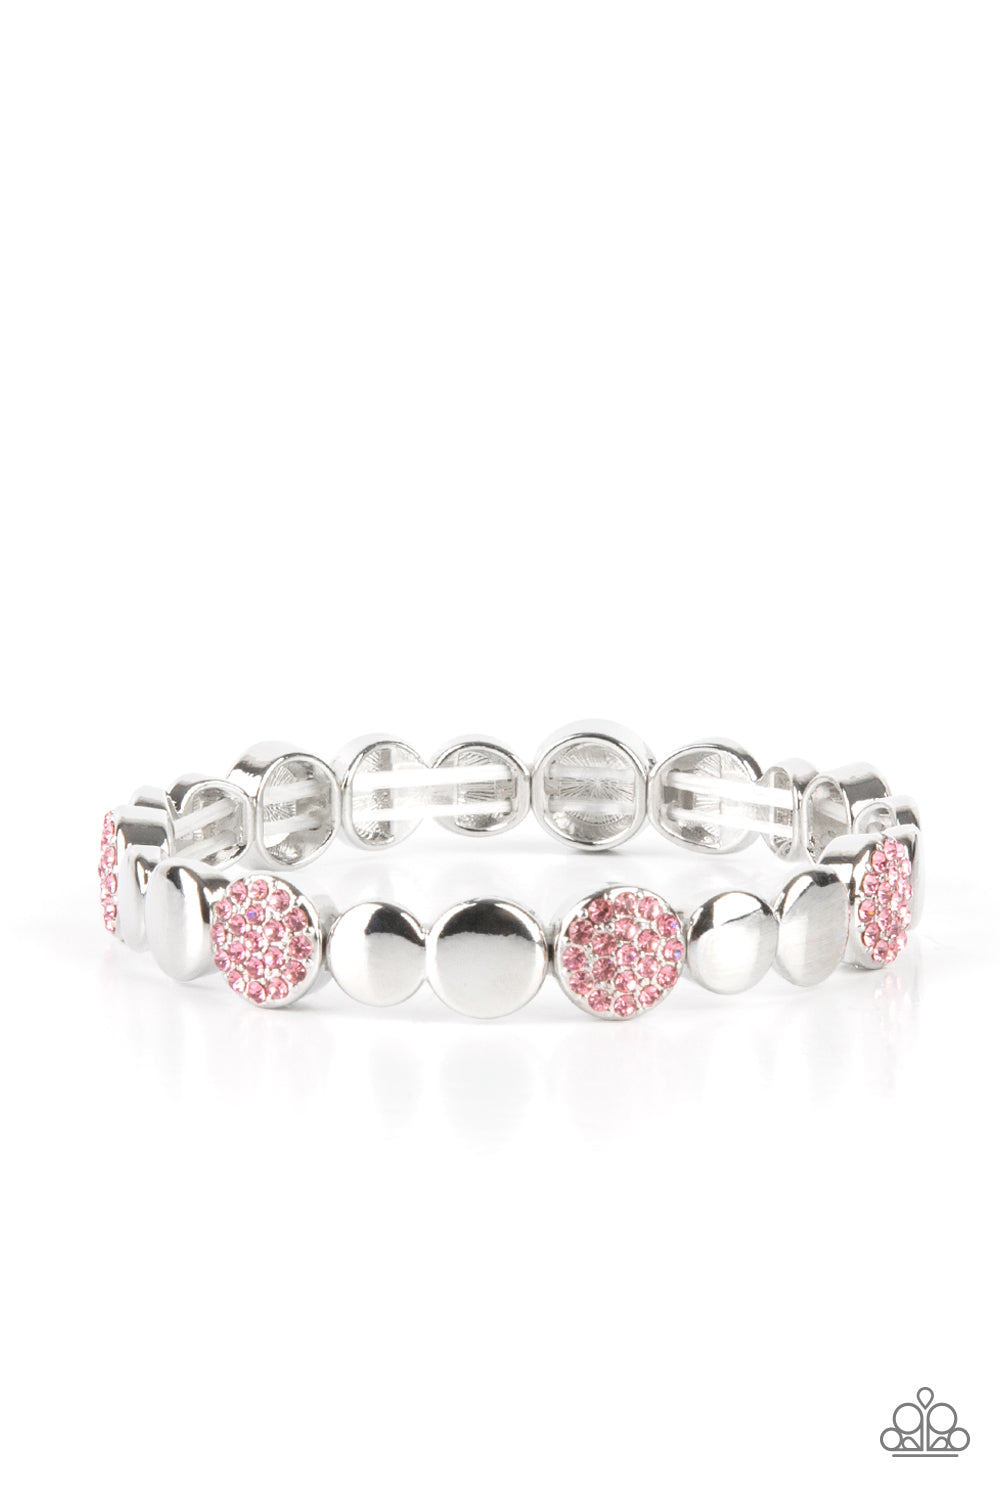 Dimensional Dazzle - Pink bracelet D066